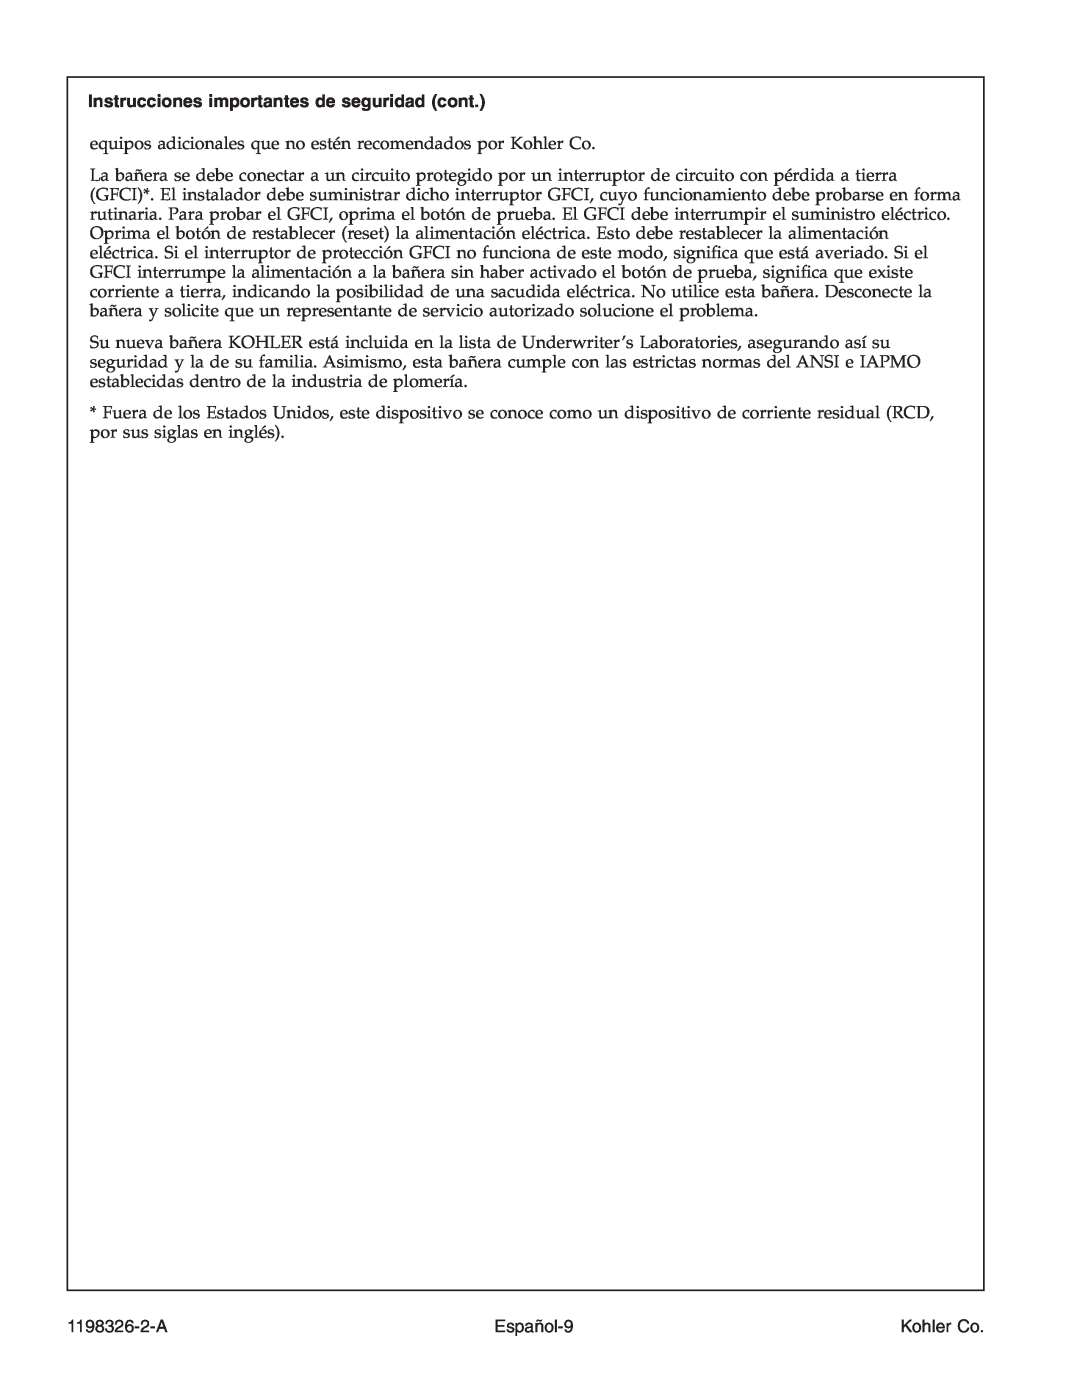 Kohler 1198326-2-A manual Instrucciones importantes de seguridad cont, Español-9, Kohler Co 